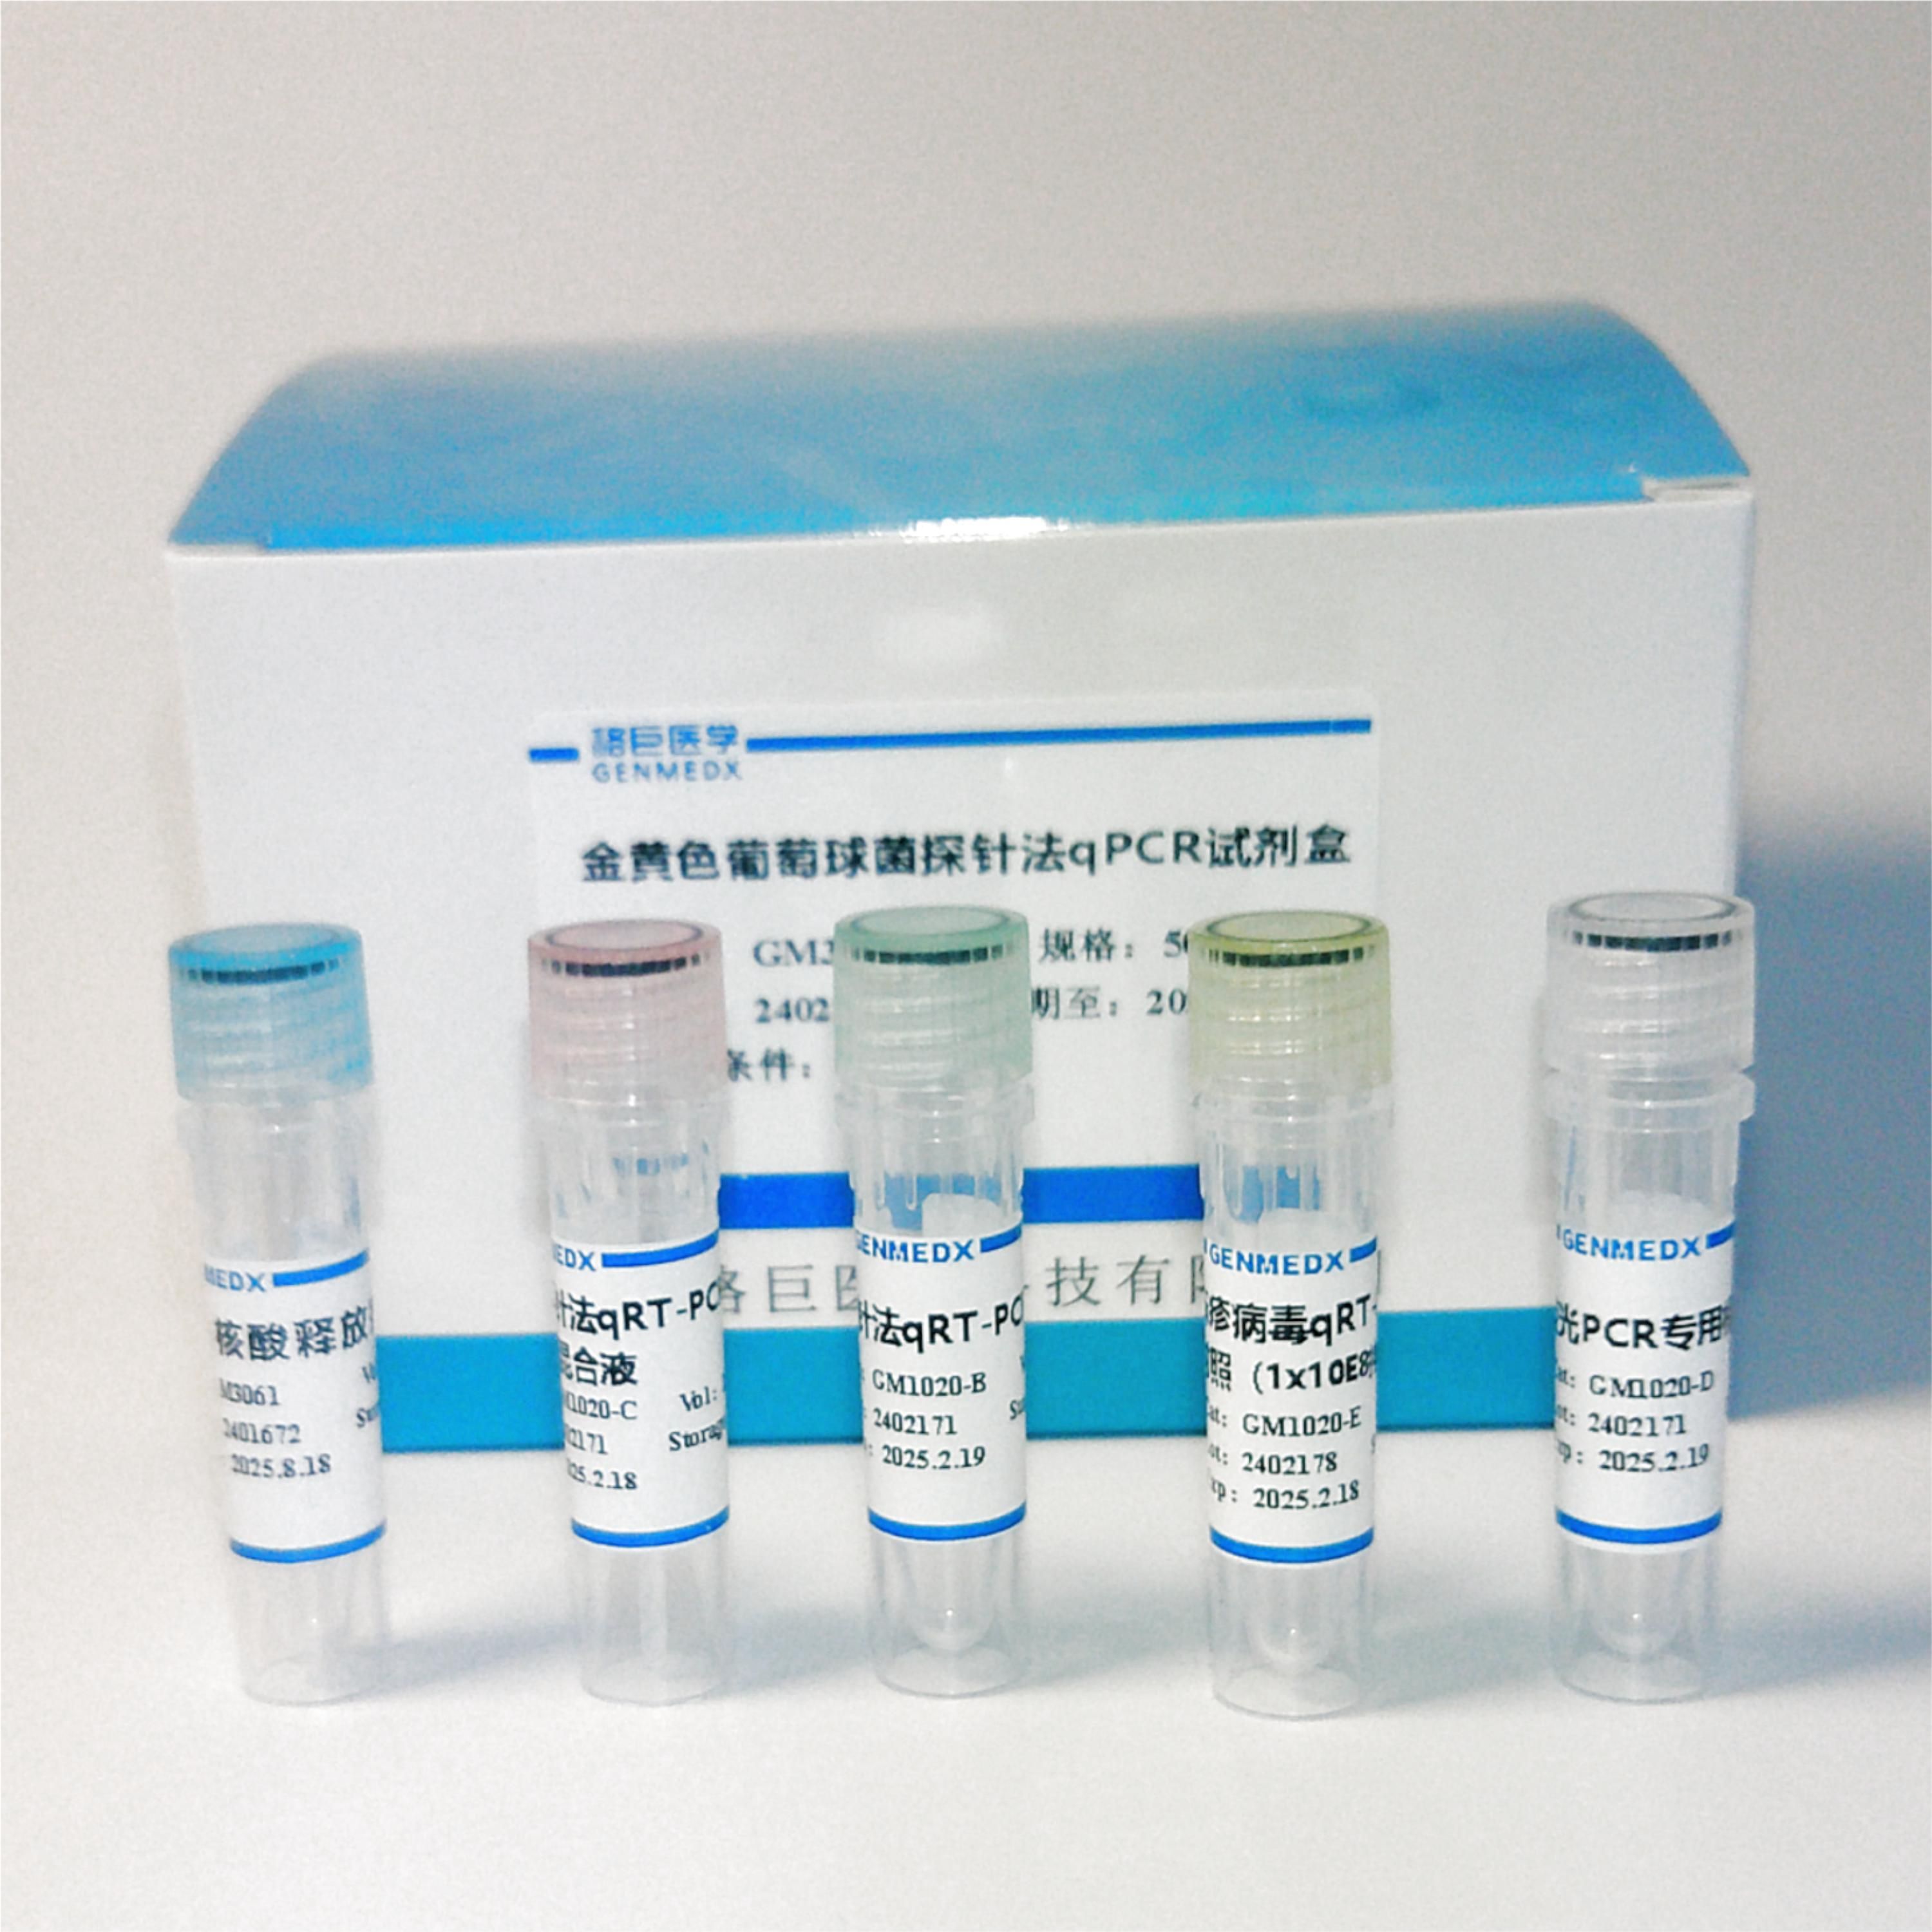 副溶血性弧菌toxR/tdh/trh三重荧光定量PCR试剂盒